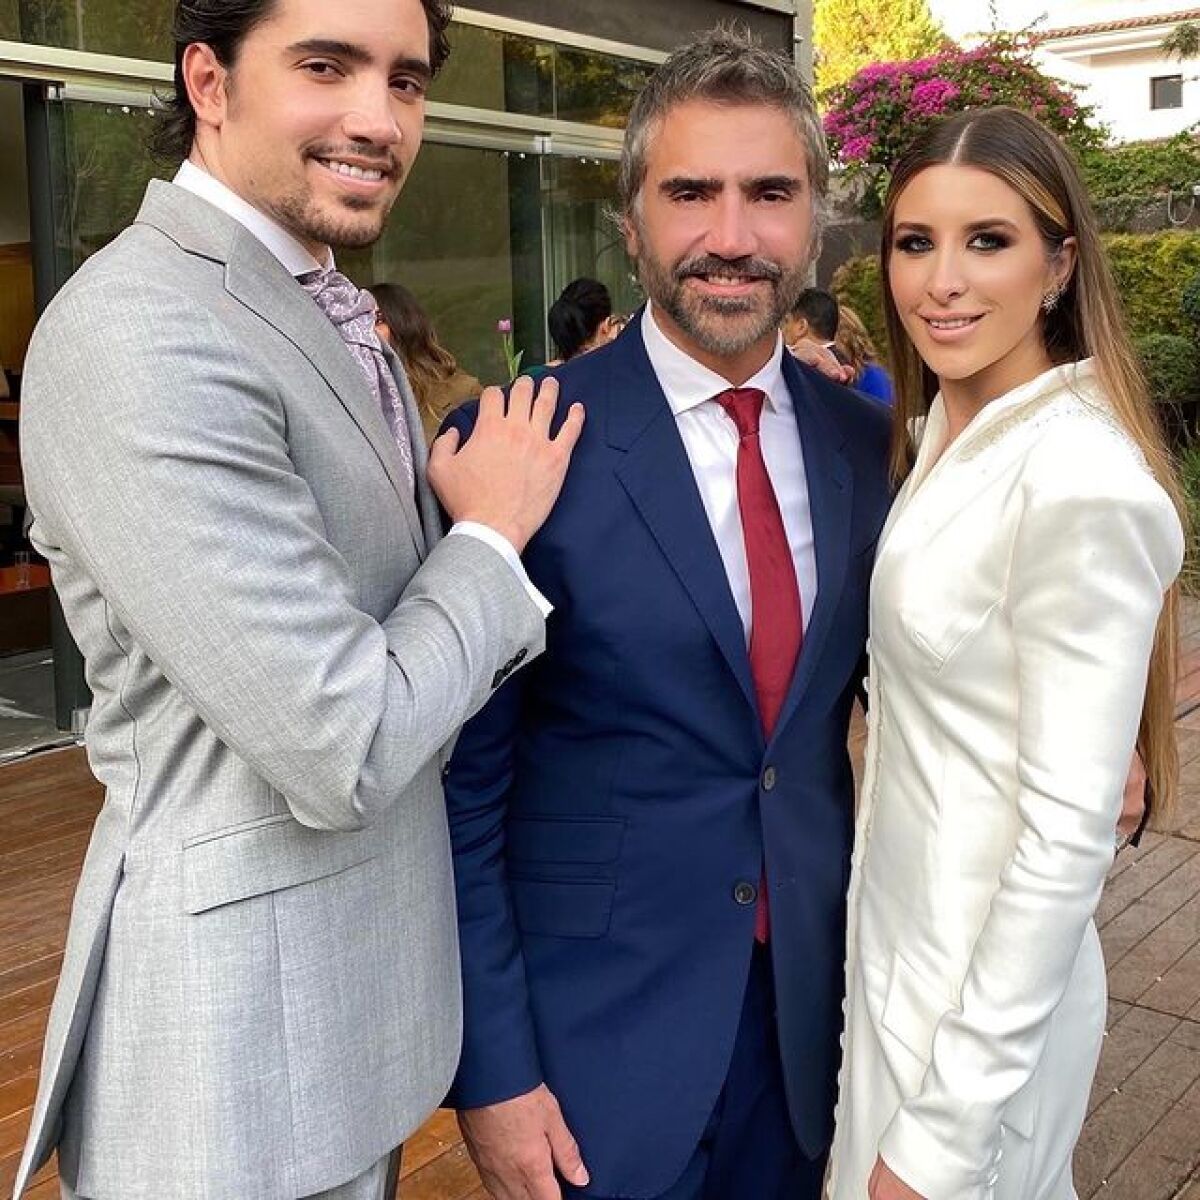 El día del matrimonio de Álex y Alexia, su padre compartió con ellos y les deseó lo mejor en esta nueva etapa de sus vidas.